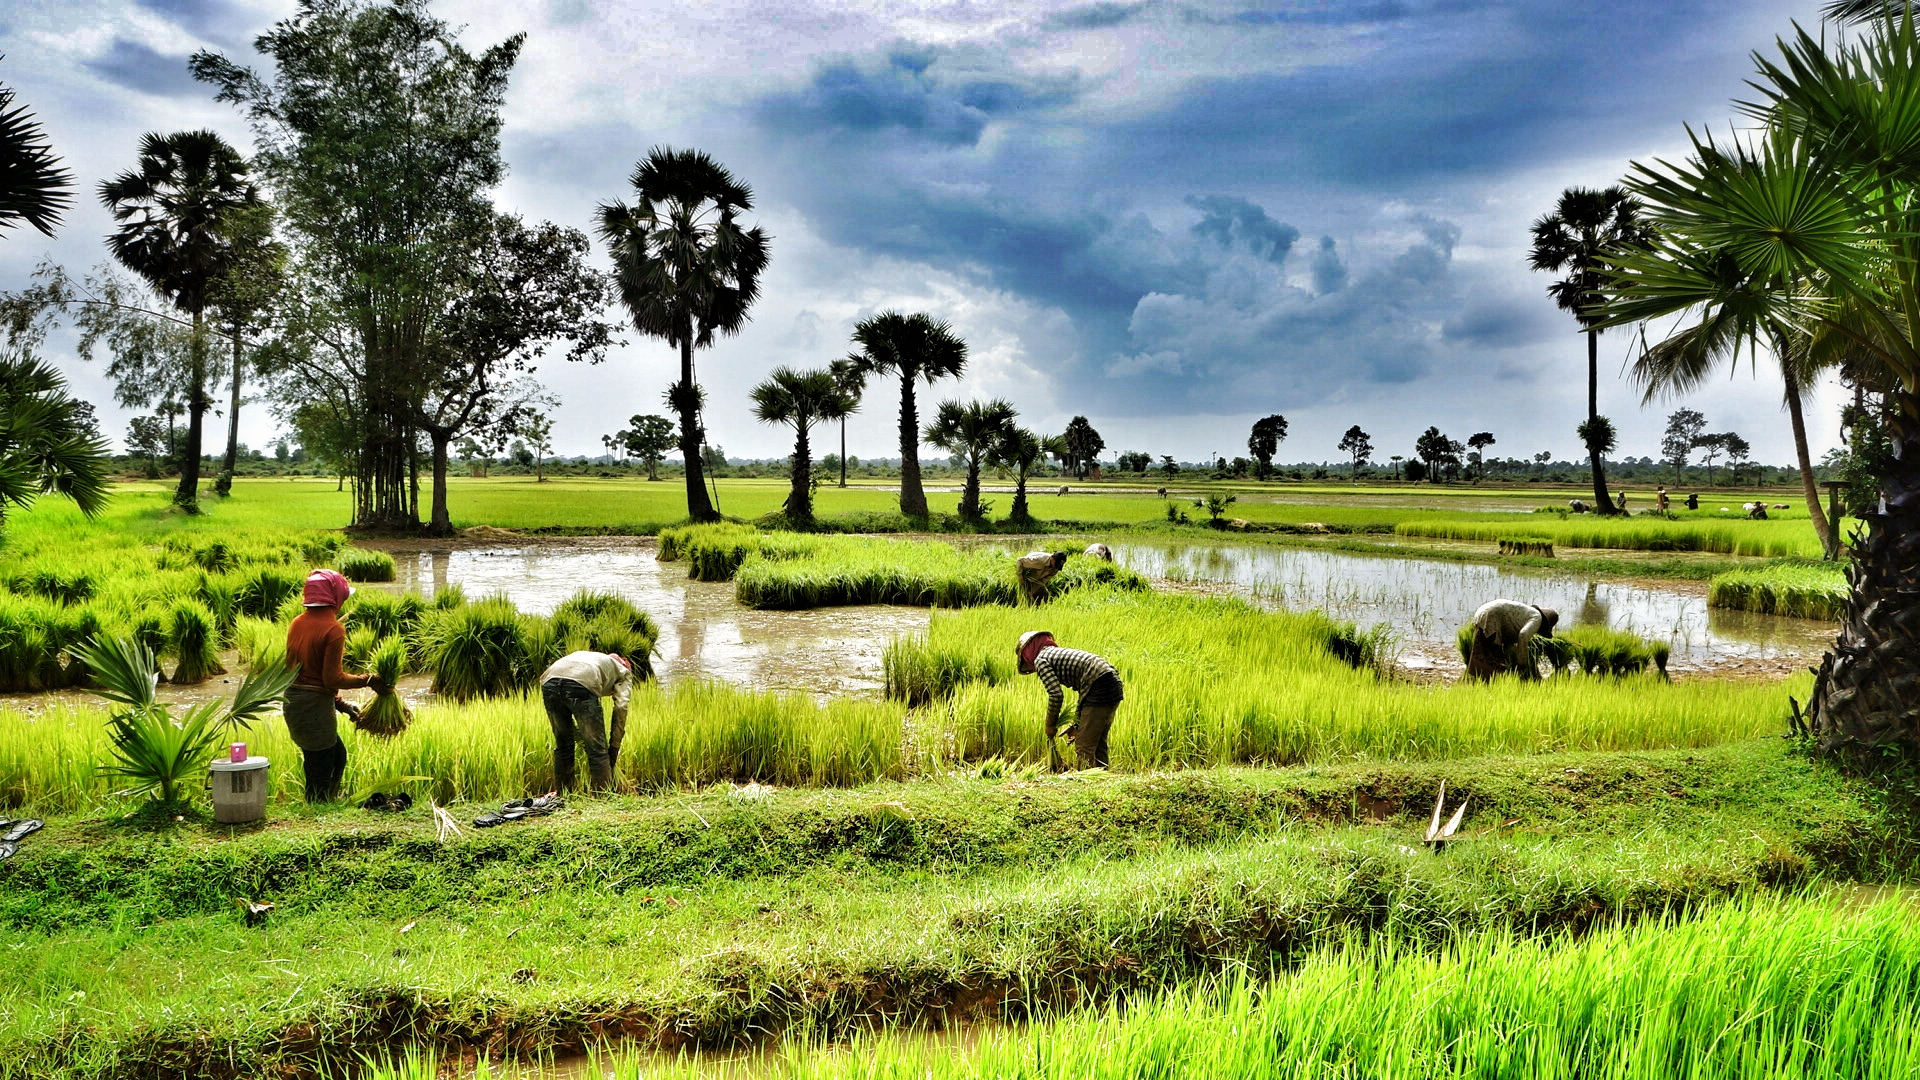 Siem Reap Rice fields ND Strupler Creative Commons 2012